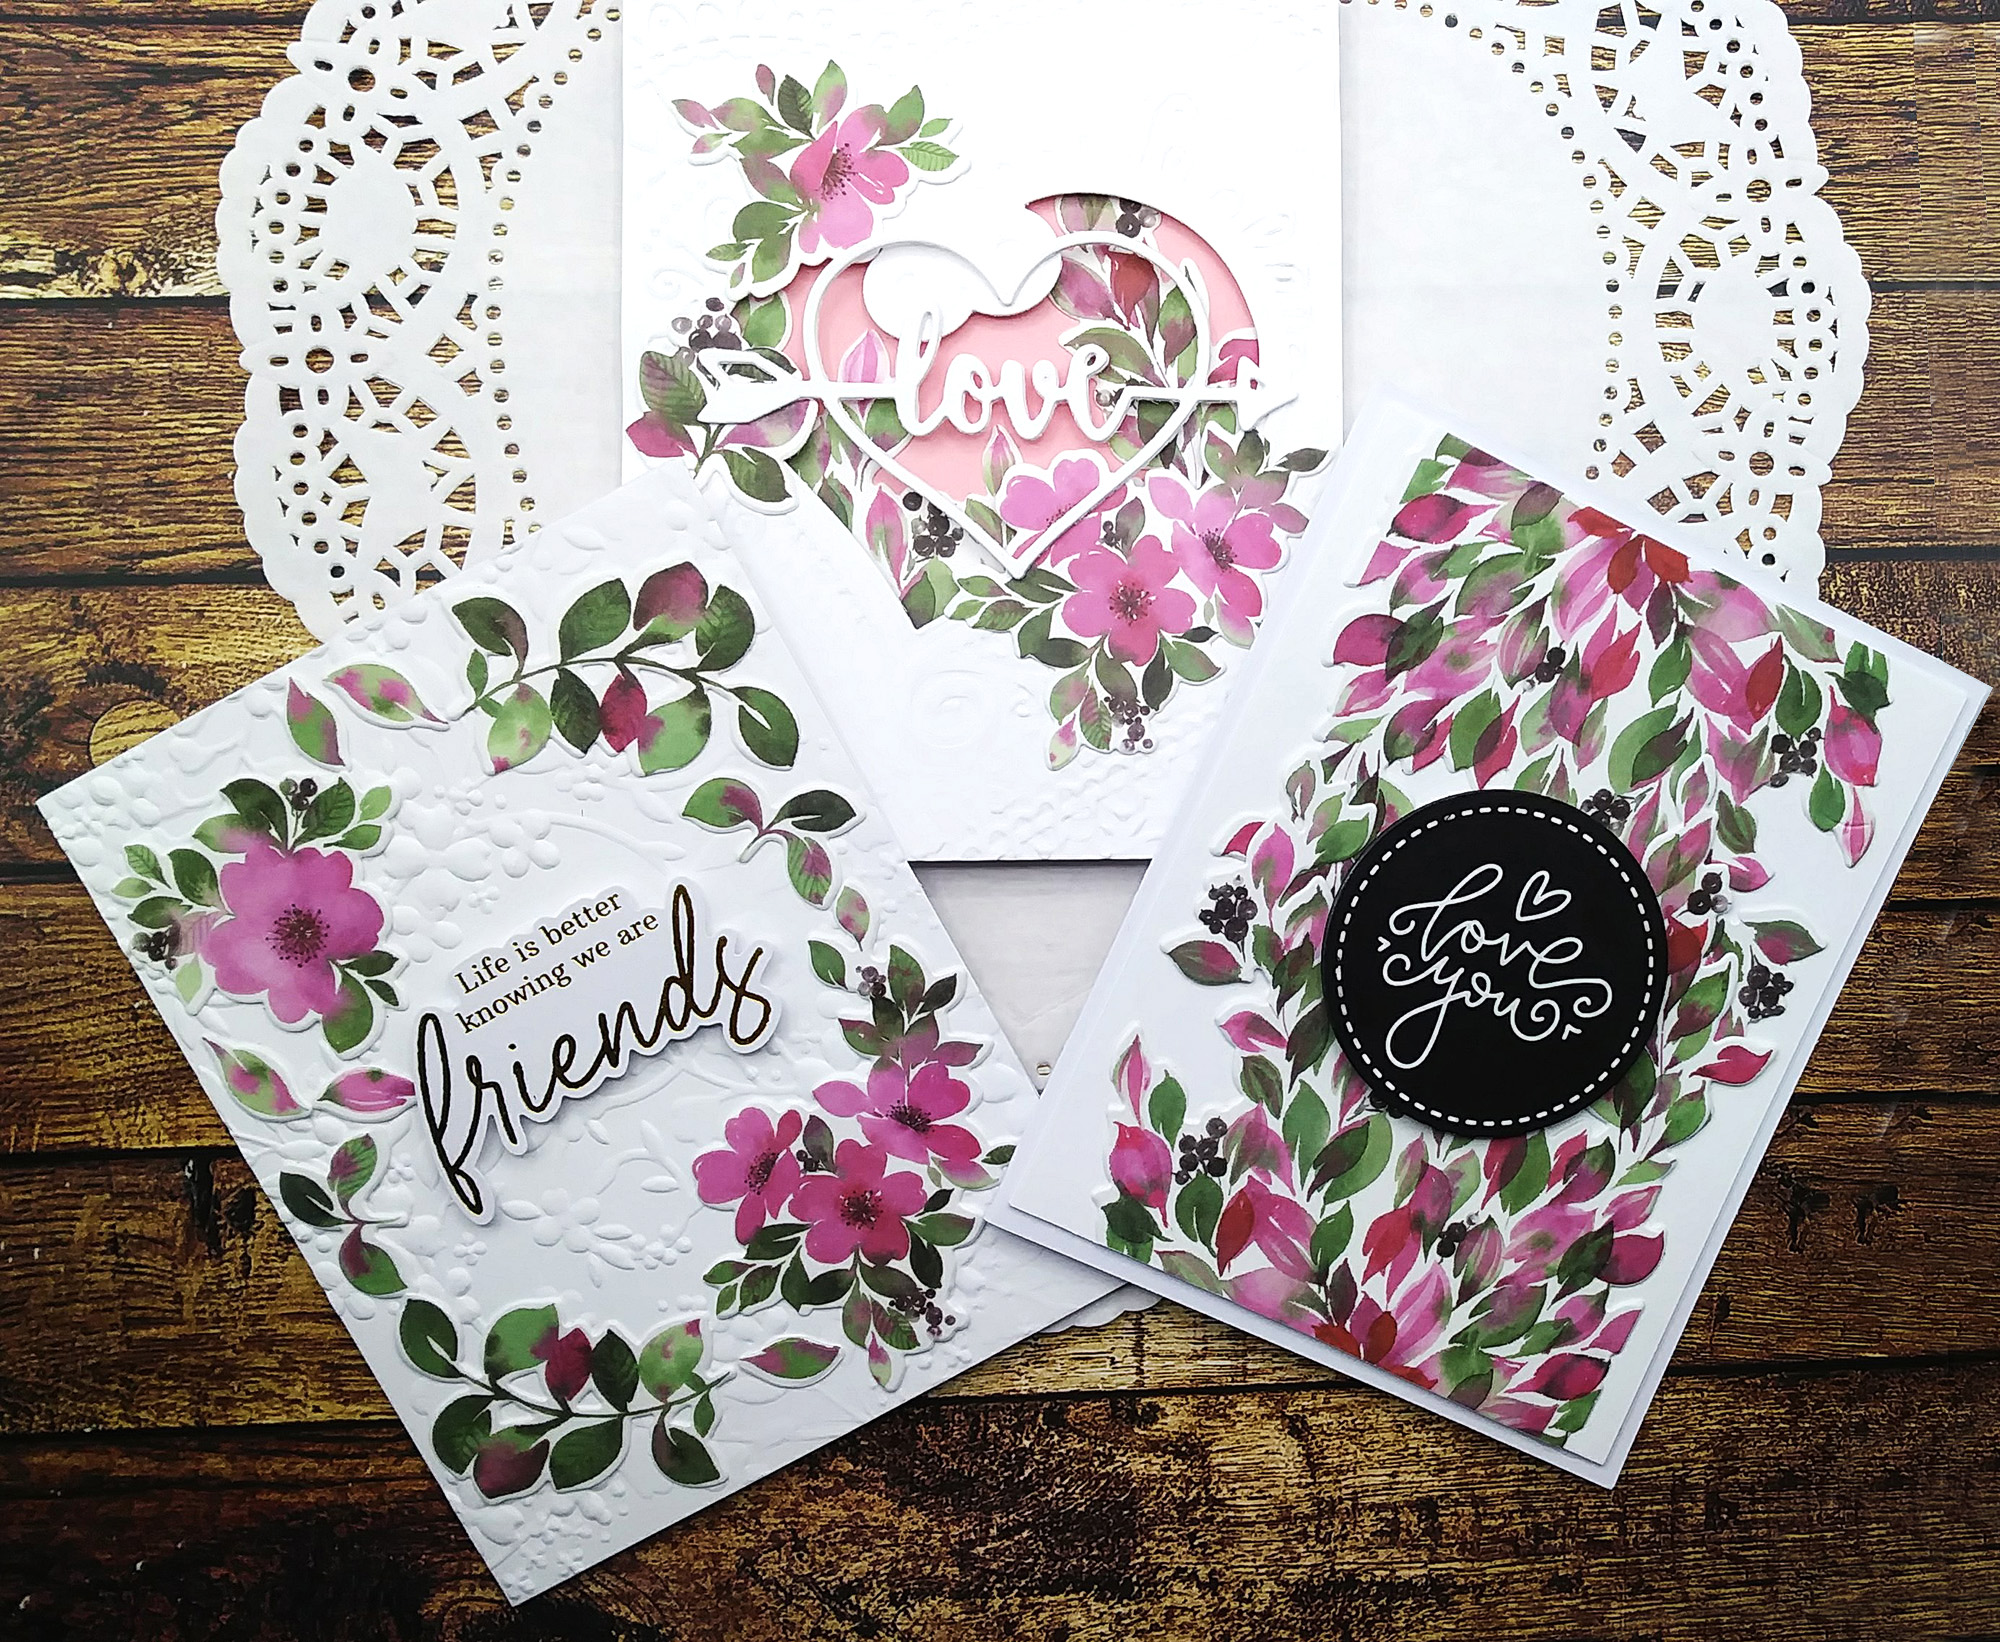 Valentine's Day Cards with Pinkfresh Studio's Washi Tape Die Bundles